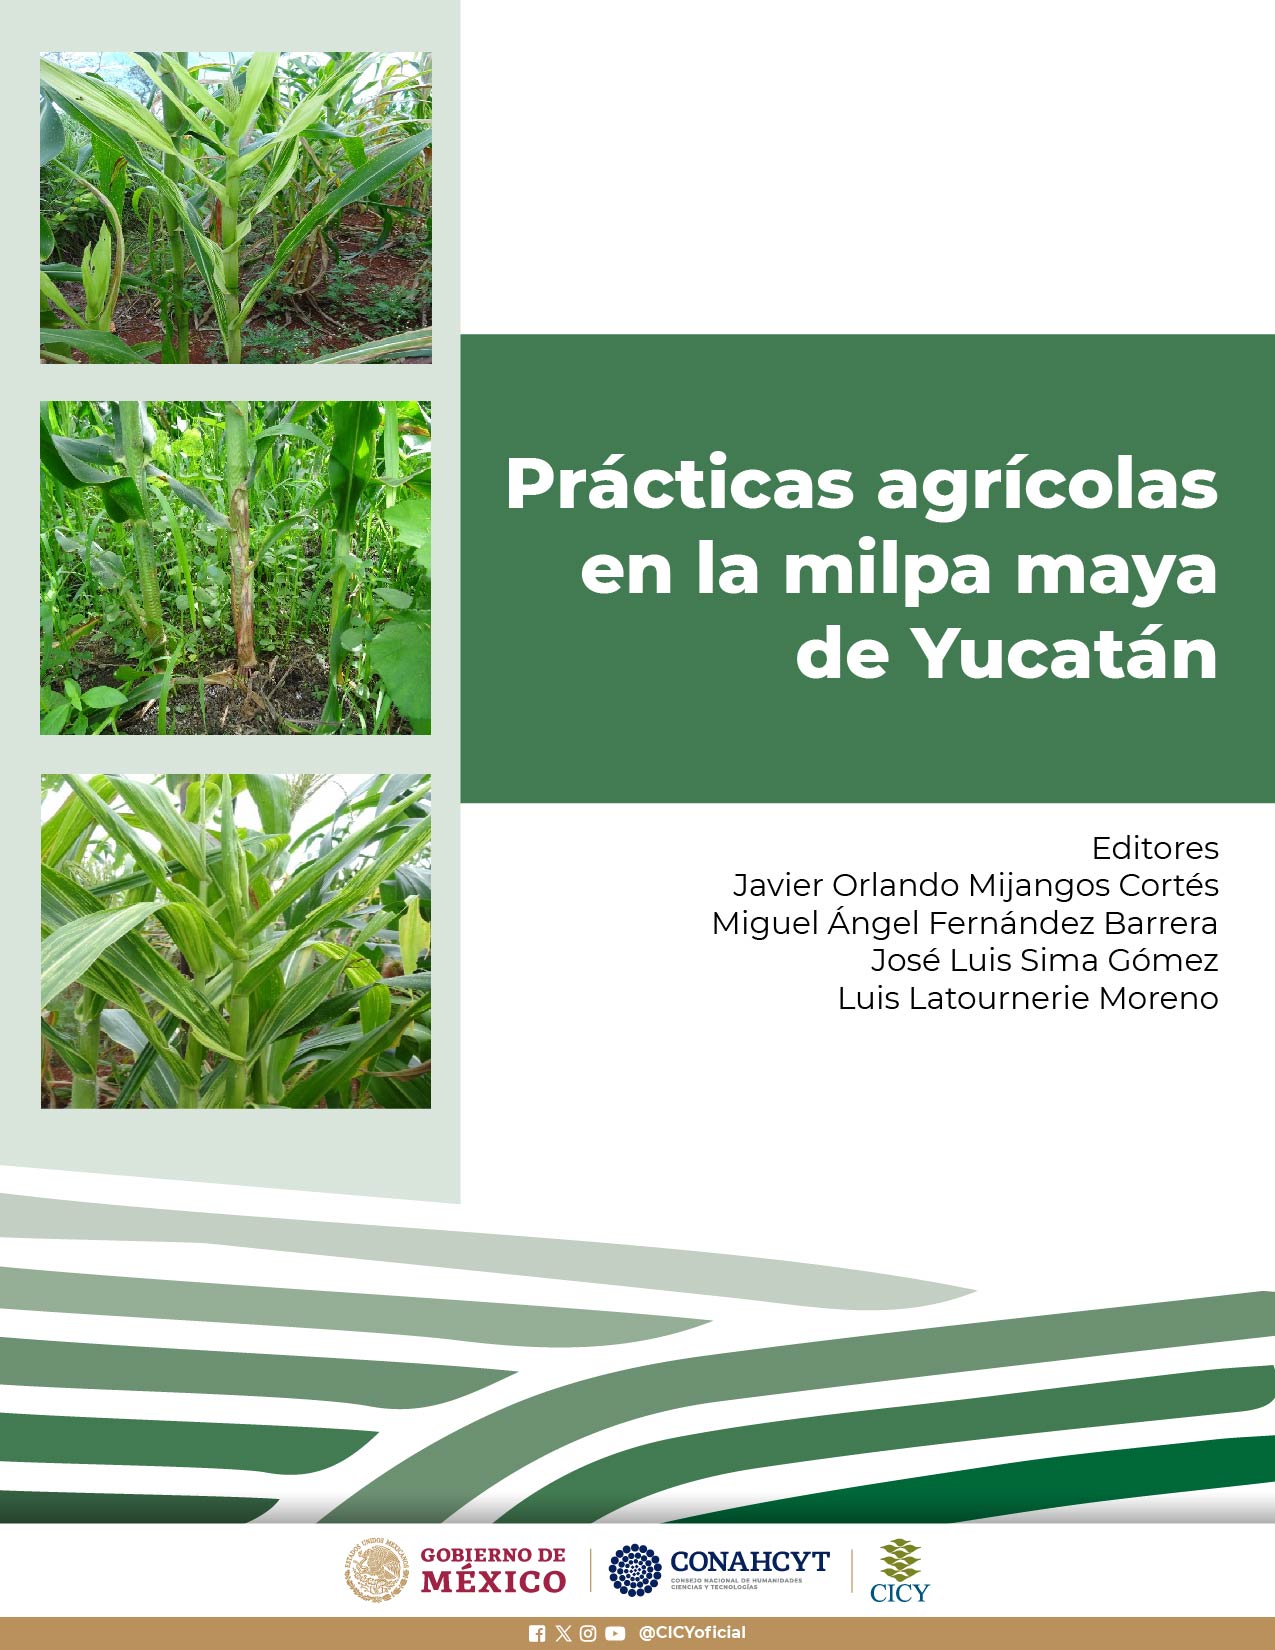 Prácticas agrícolas en la milpa maya